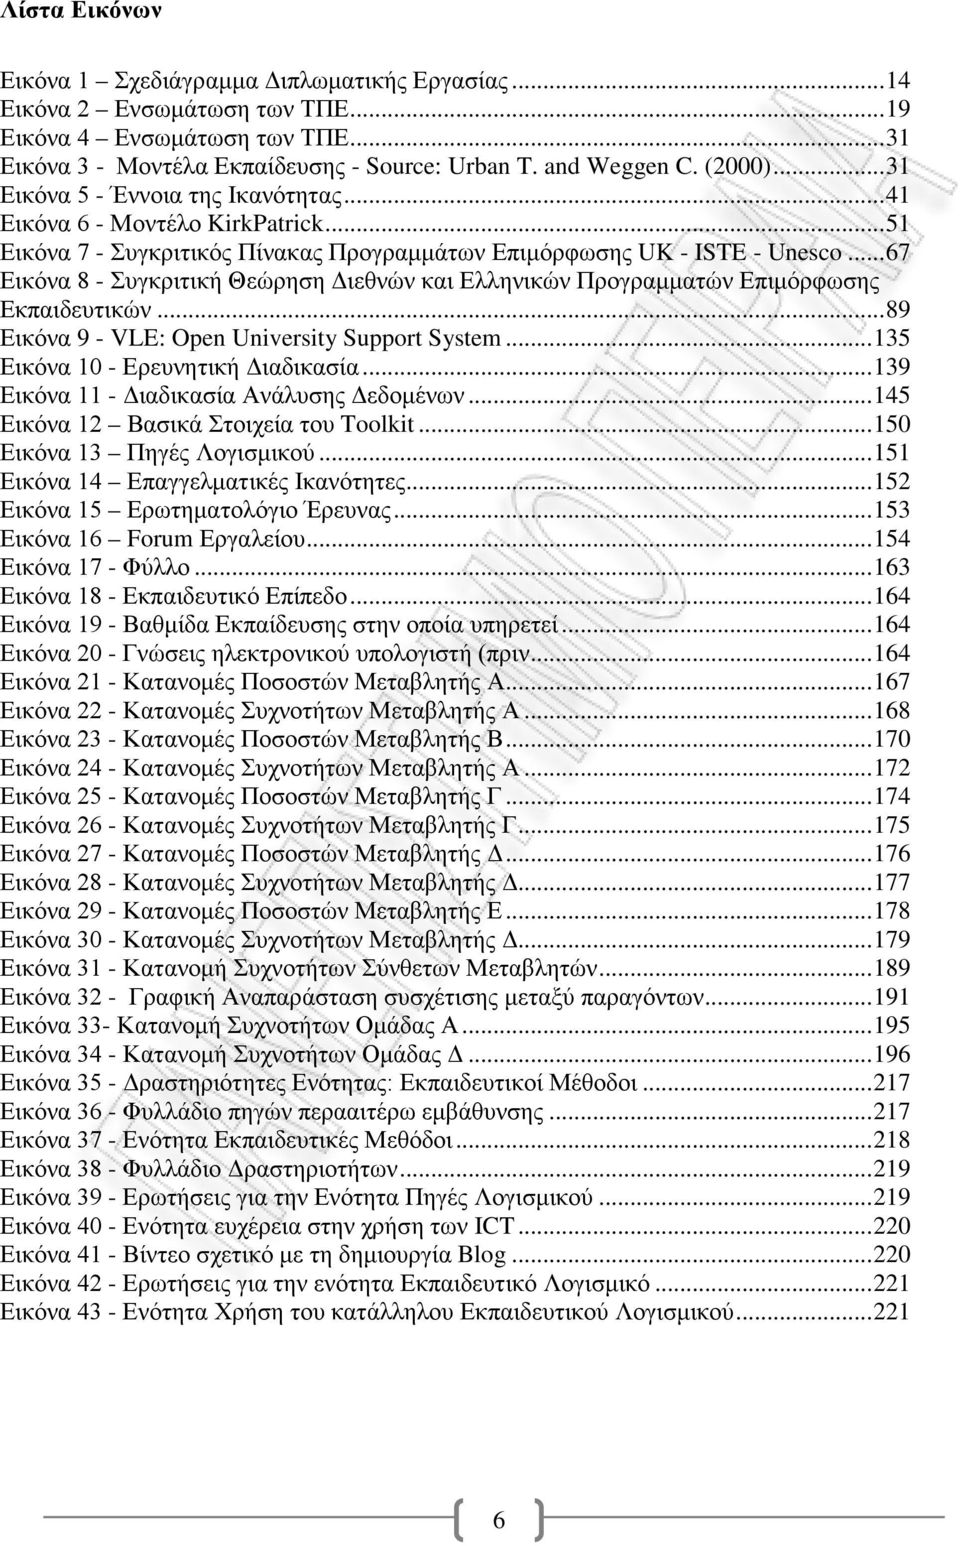 .. 67 Εικόνα 8 - Συγκριτική Θεώρηση Διεθνών και Ελληνικών Προγραμματών Επιμόρφωσης Εκπαιδευτικών... 89 Εικόνα 9 - VLE: Open University Support System... 135 Εικόνα 10 - Ερευνητική Διαδικασία.